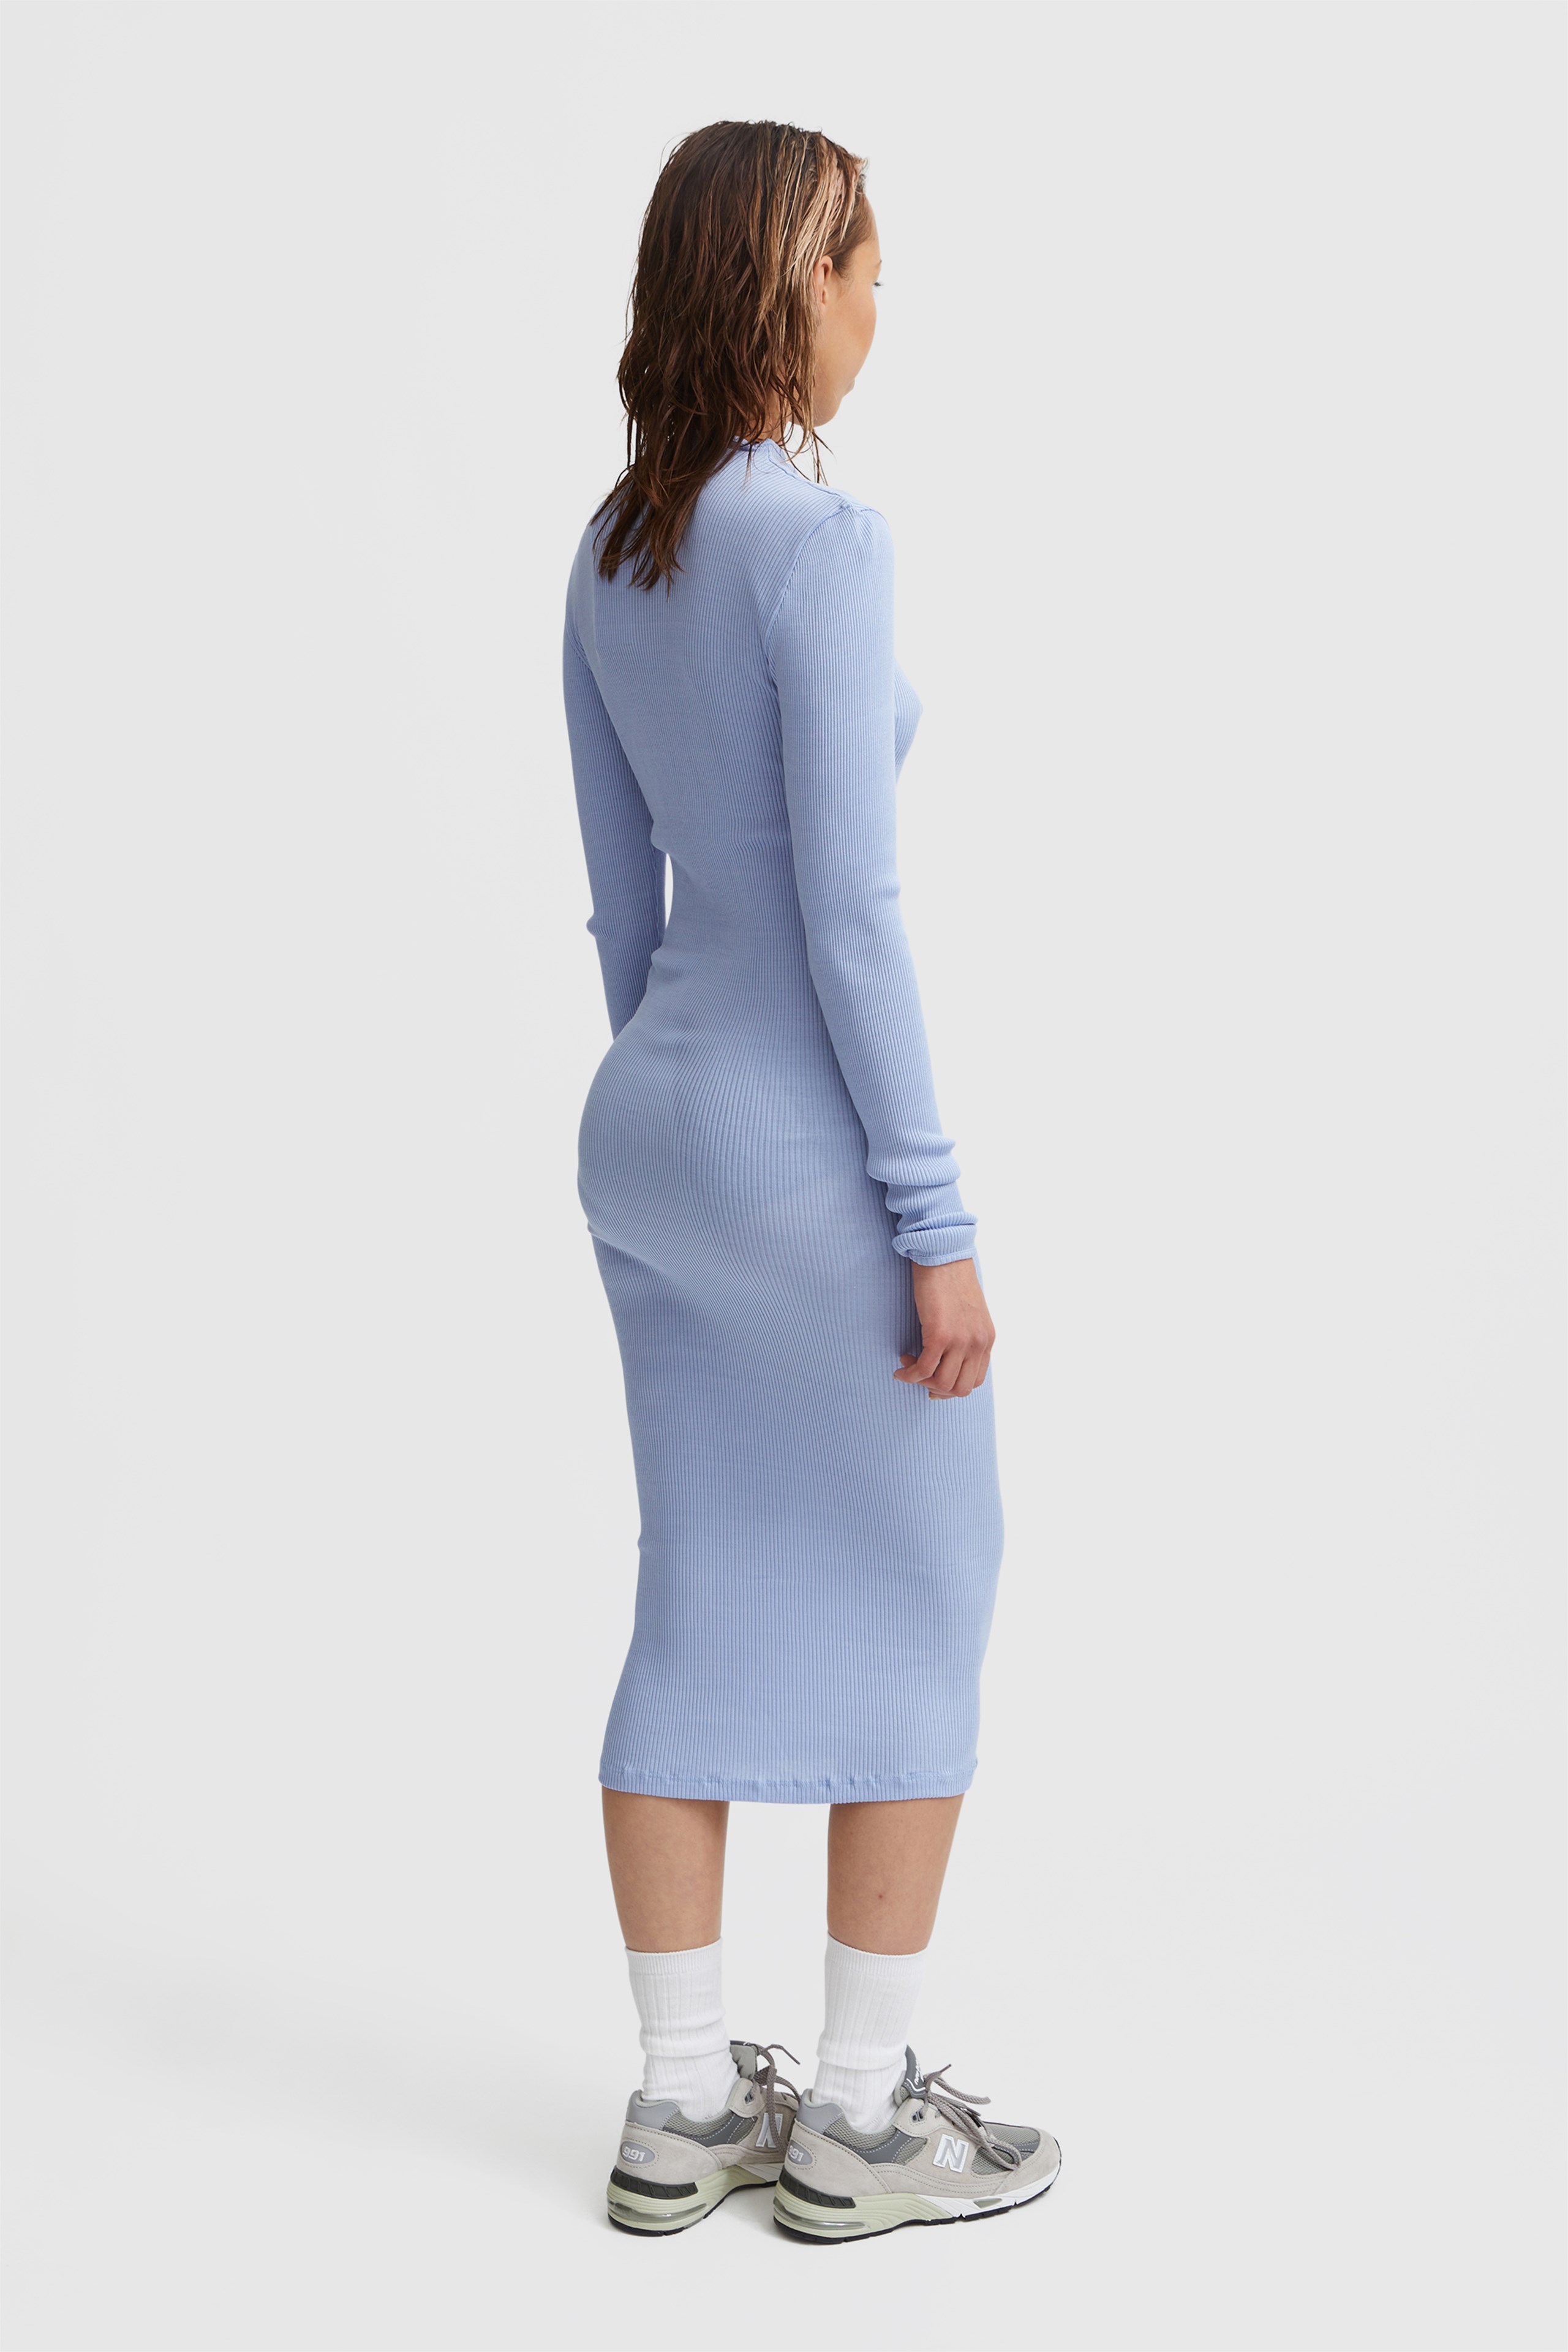 OpéraSPORT Regine Seamless Dress Blue | WoodWood.com